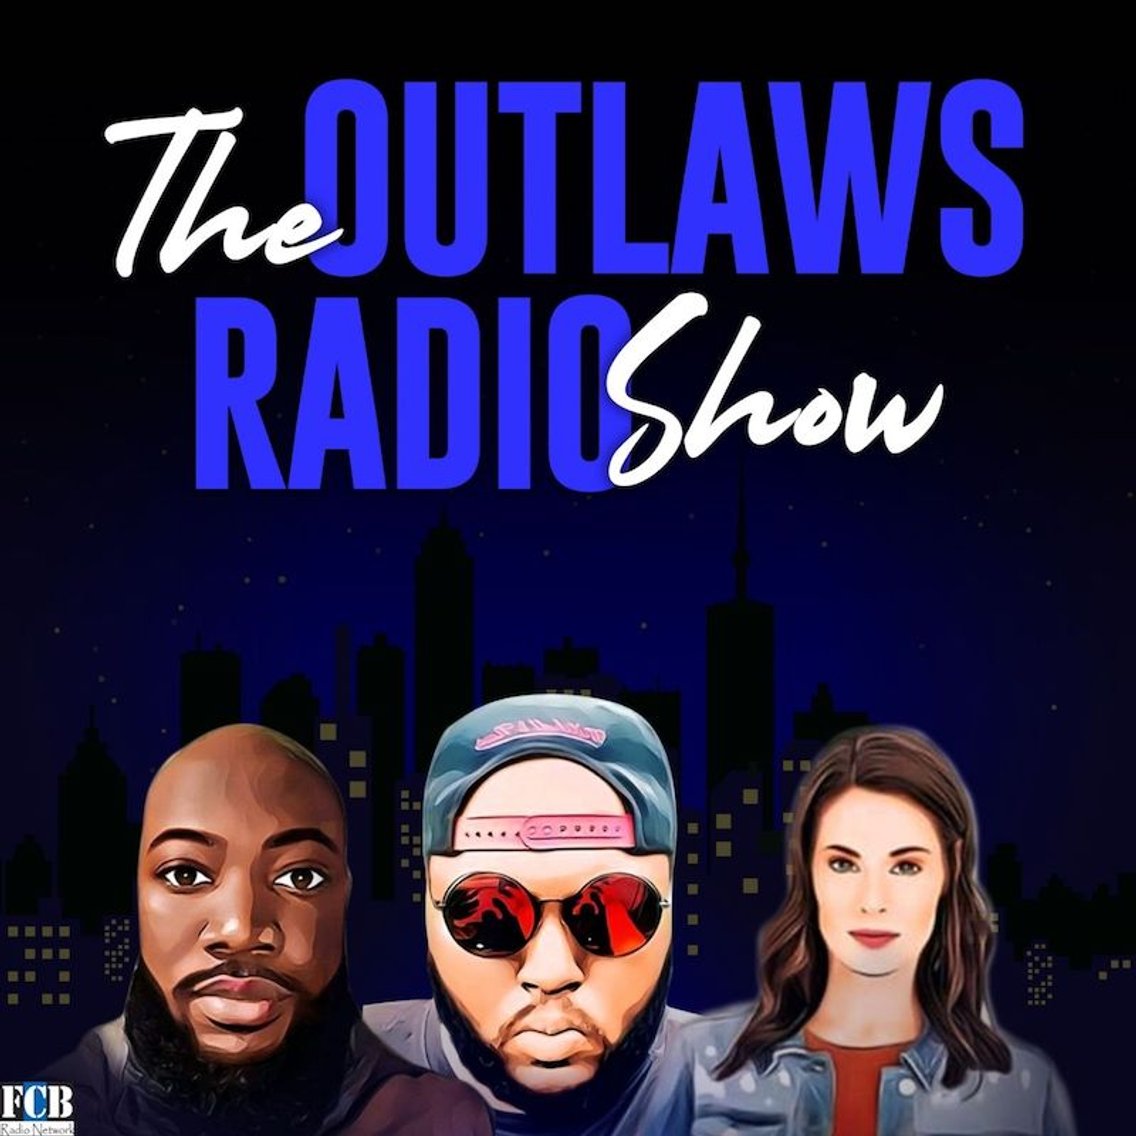 The Outlaws Radio Show - immagine di copertina
